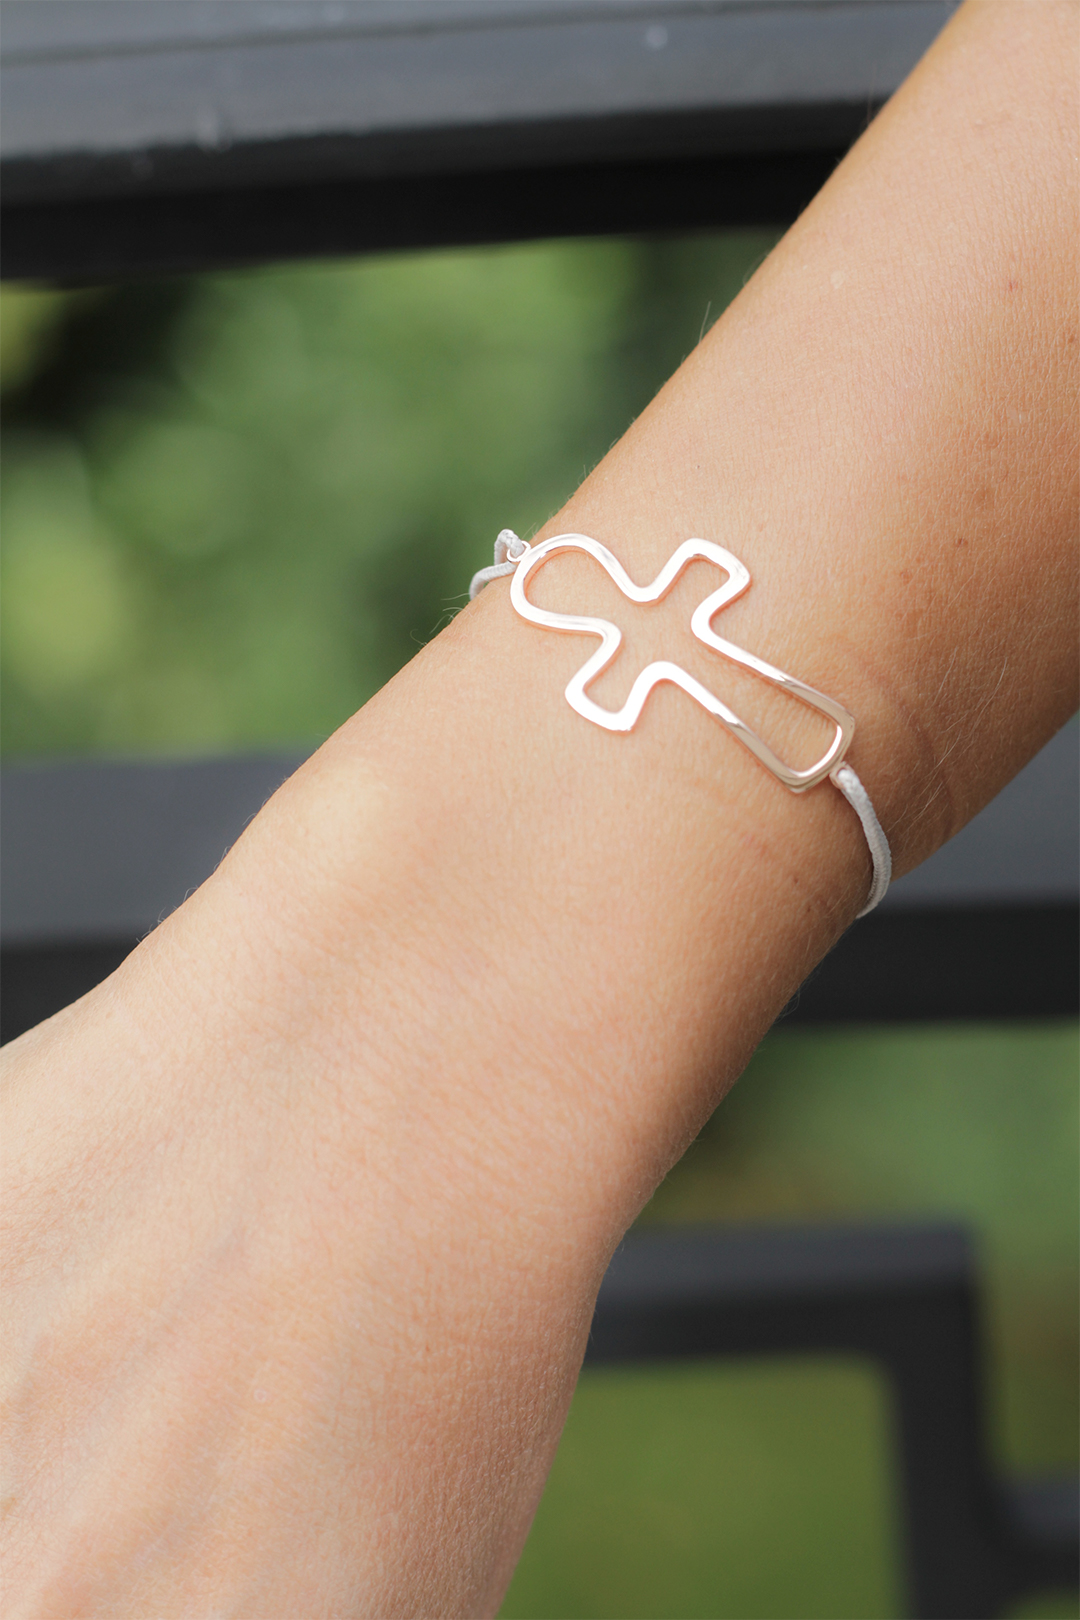 Photographie du bracelet Key of Life en or rose, plan serré sur le poignet d'un modèle féminin. Le bracelet représente une croix égyptienne montée sur un cordon en coton ciré blanc.